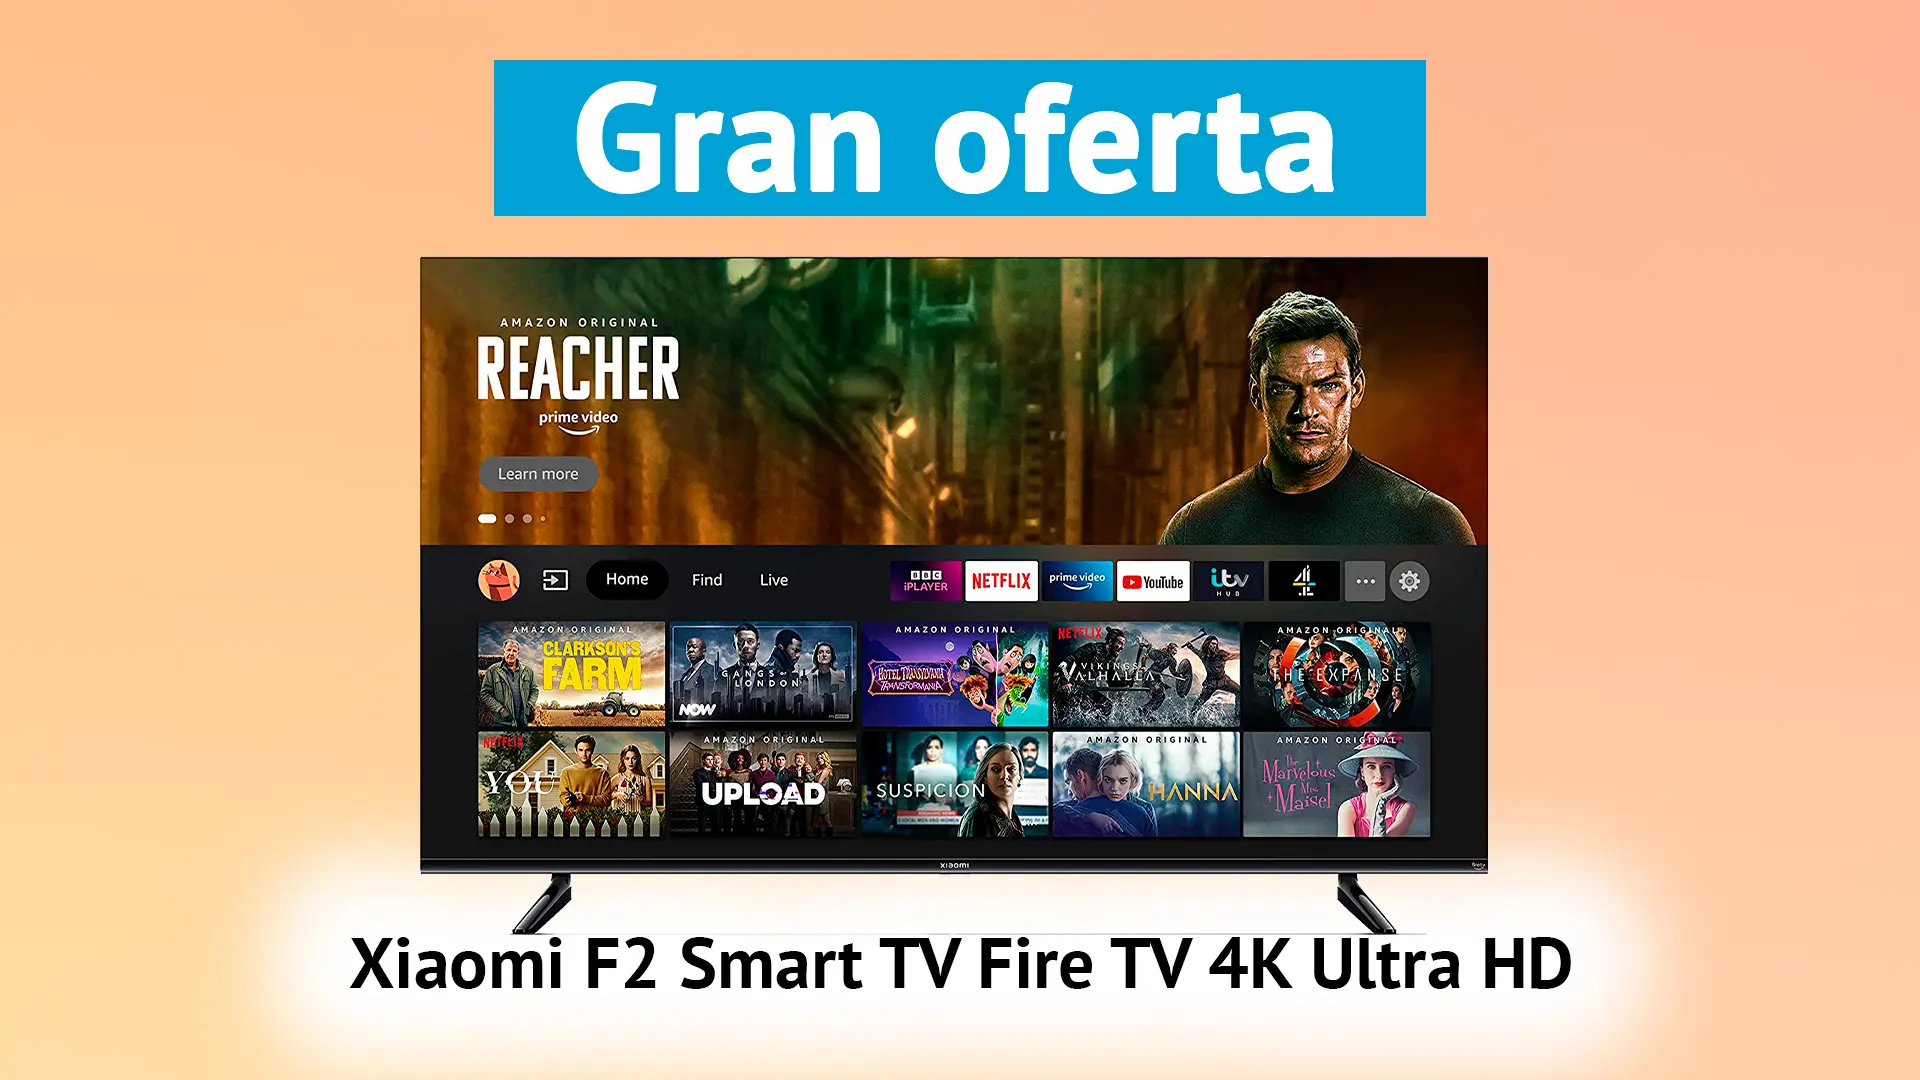 Oferta Xiaomi F2 Smart TV Fire TV 4K Ultra HD espectacular lista para disfrutarla